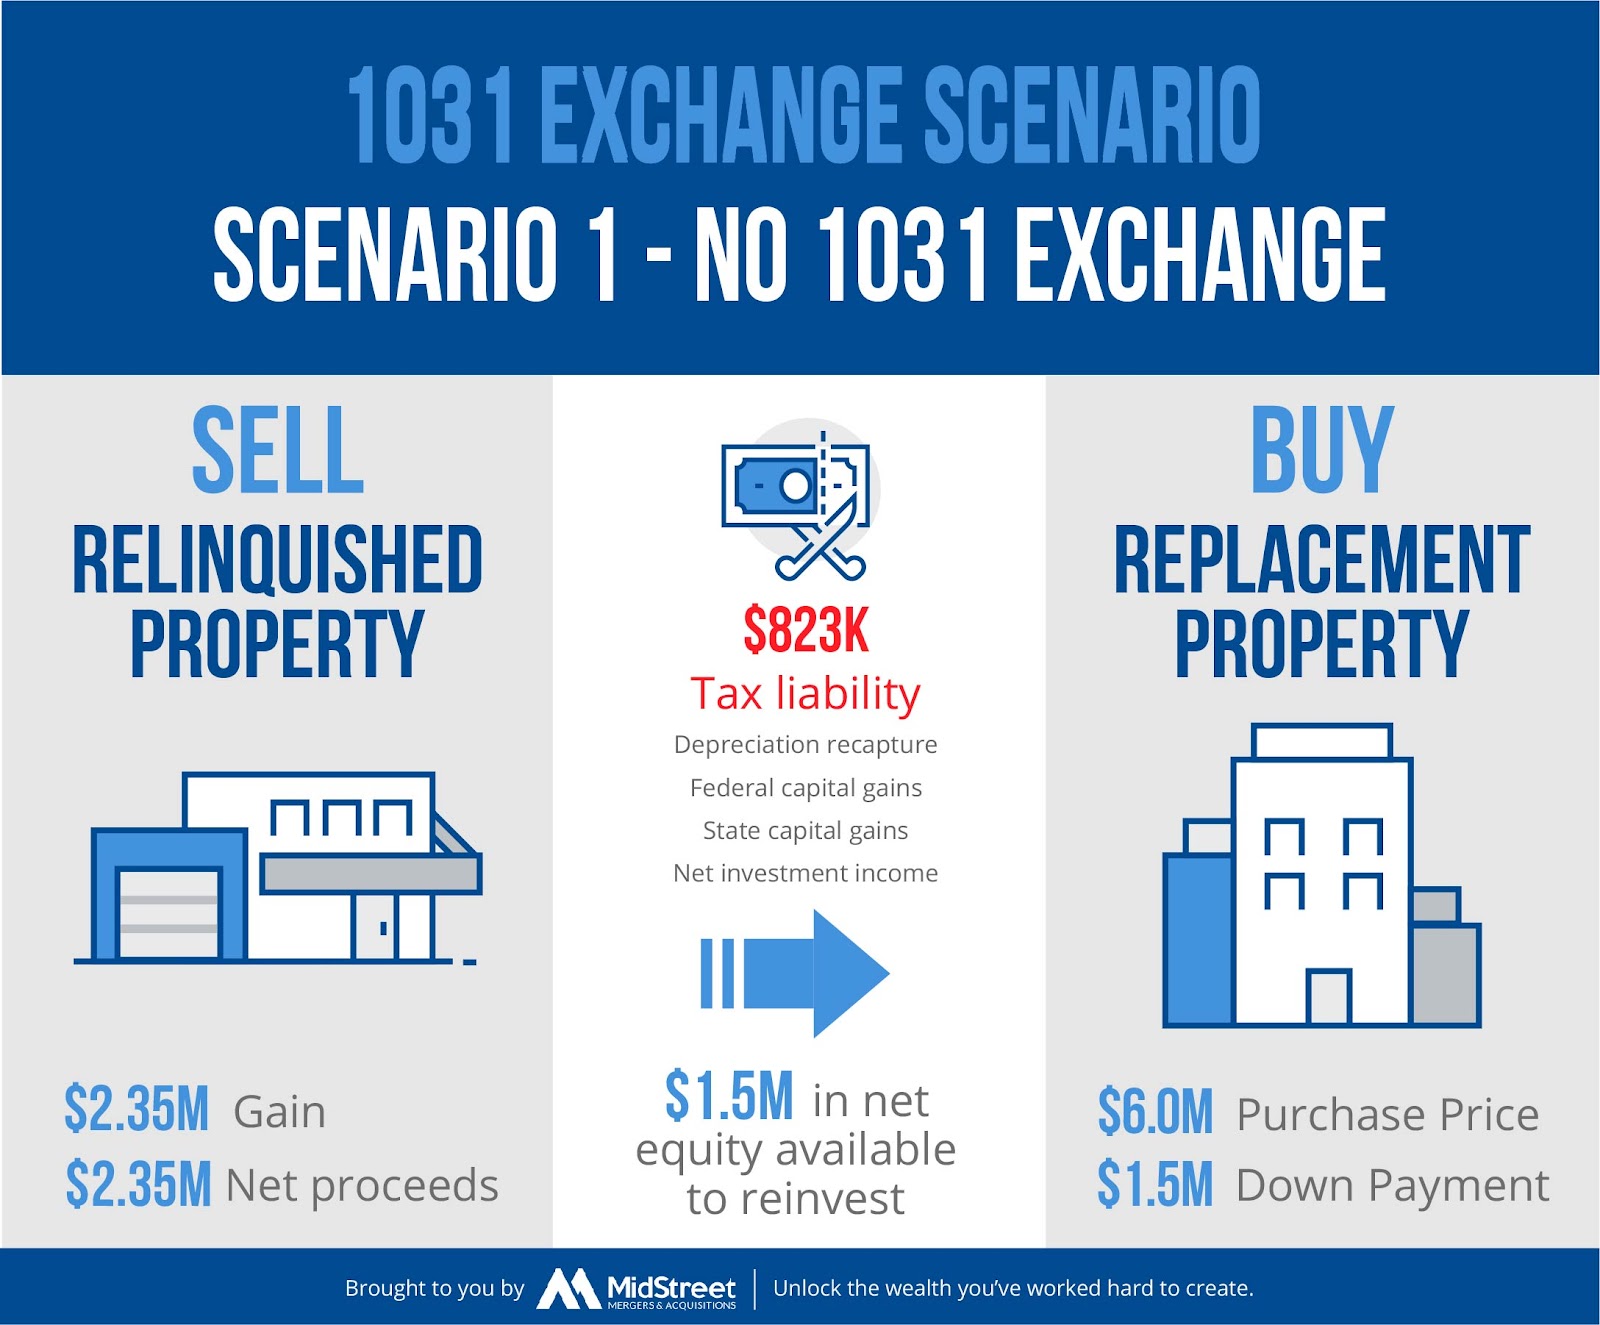 Scenario if you do not do a 1031 exchange